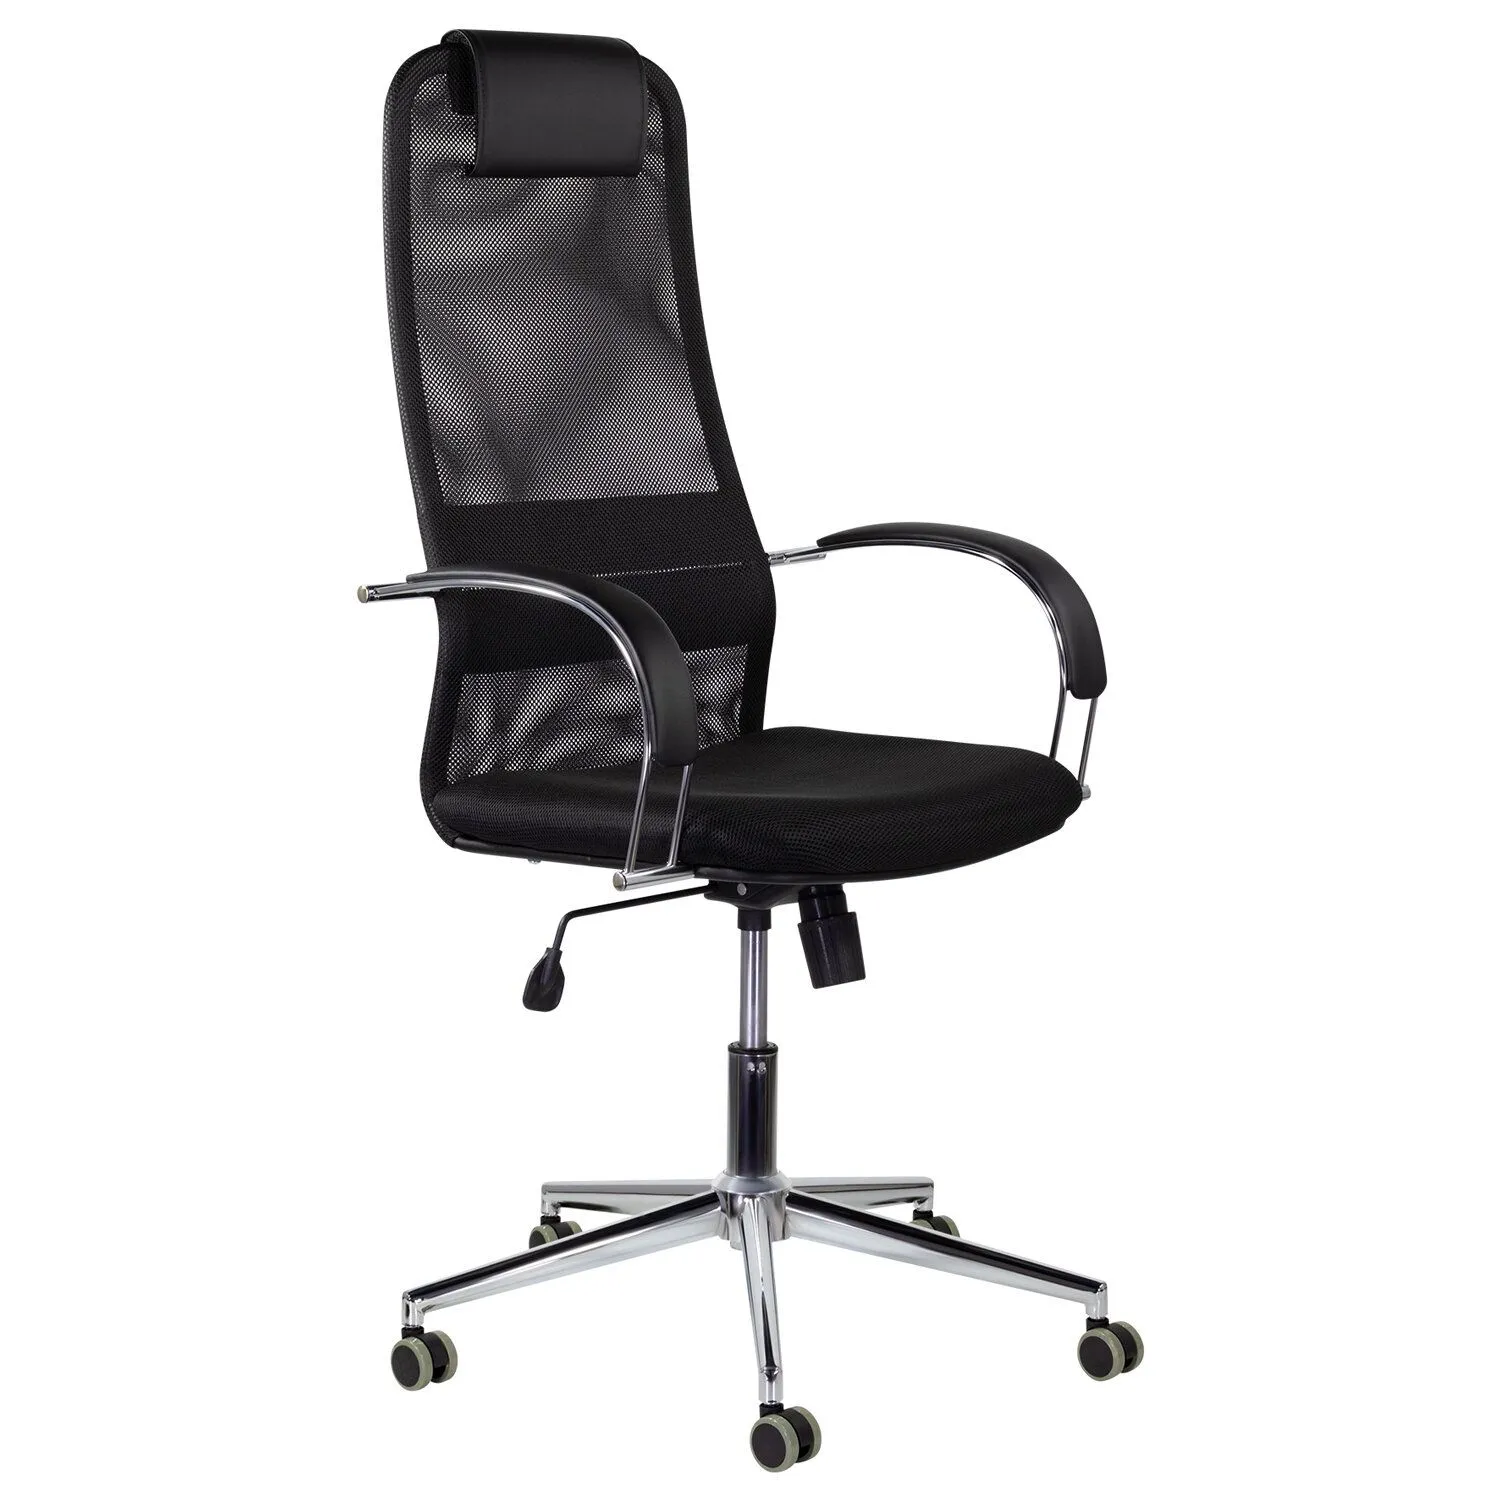 Кресло компьютерное BRABIX Pilot EX-610 CH premium ткань-сетка Черный 532417